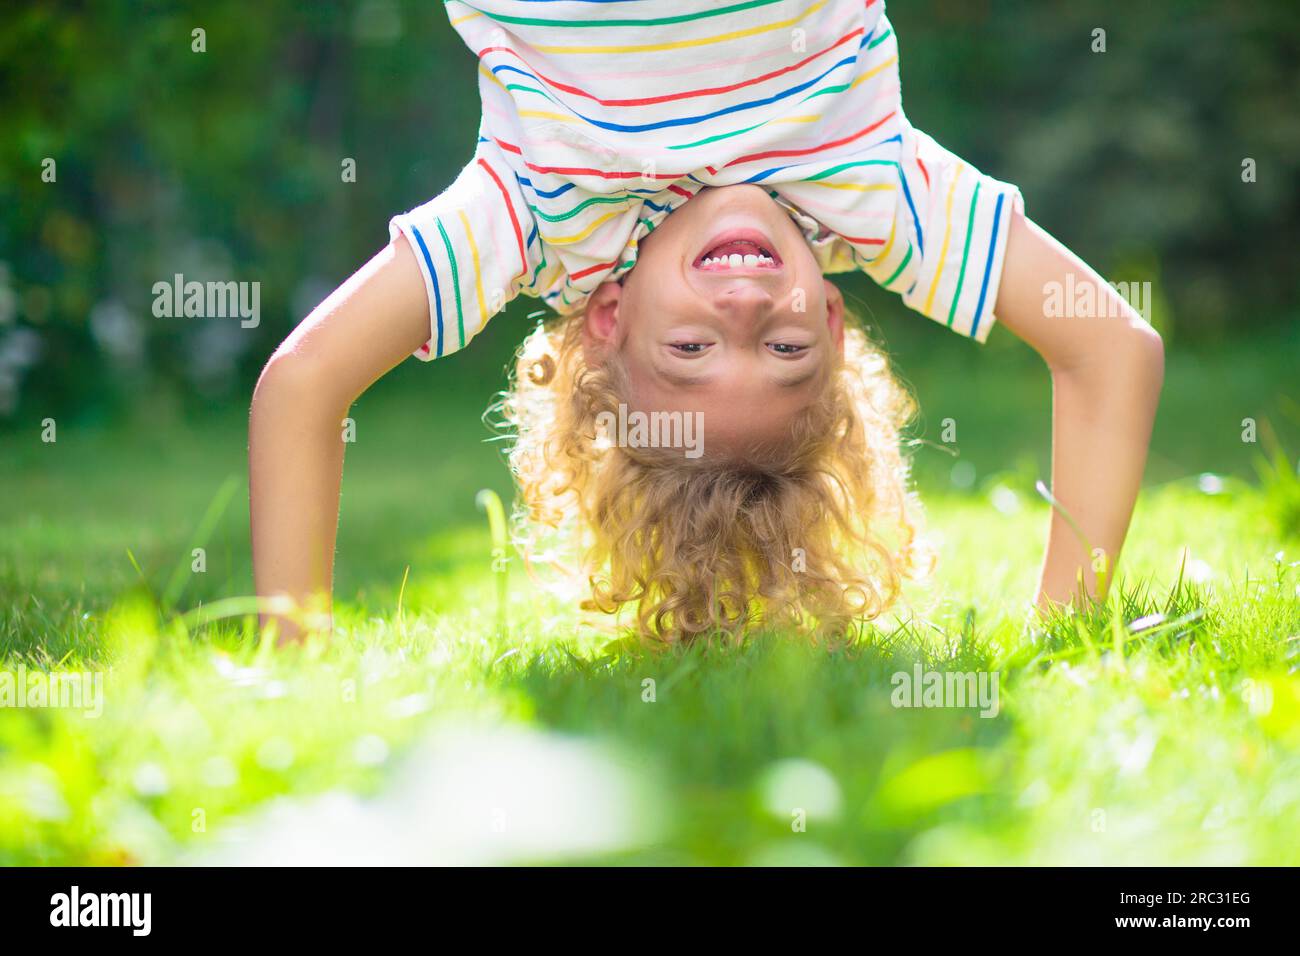 Der kleine Junge hängt kopfüber. Handstand-Übungen für kleine Kinder. Aktives Kind spielt auf sonnigen Gartenrasen. Sommerspaß. Kinder spielen draußen. Stockfoto